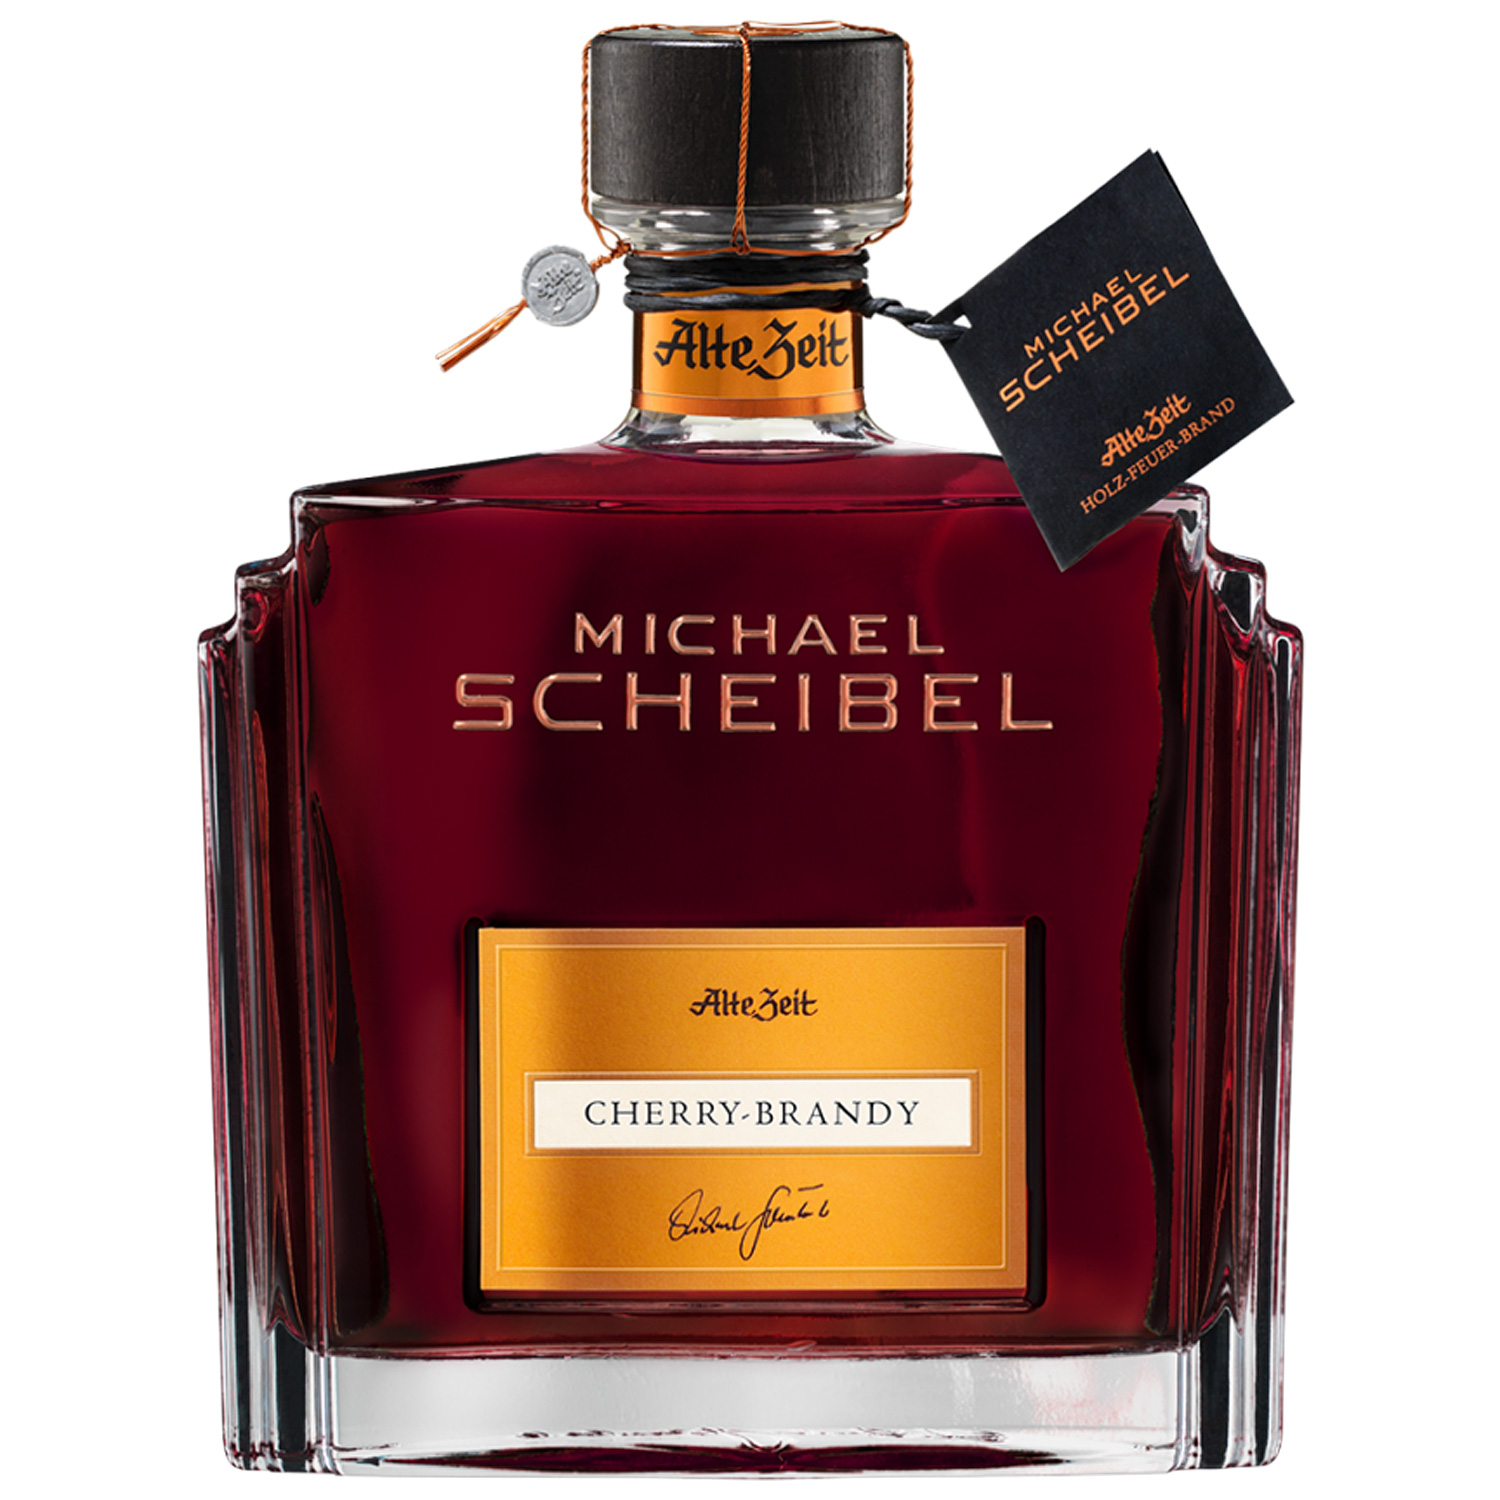 Michael Scheibel Alte Zeit Cherry Brandy 